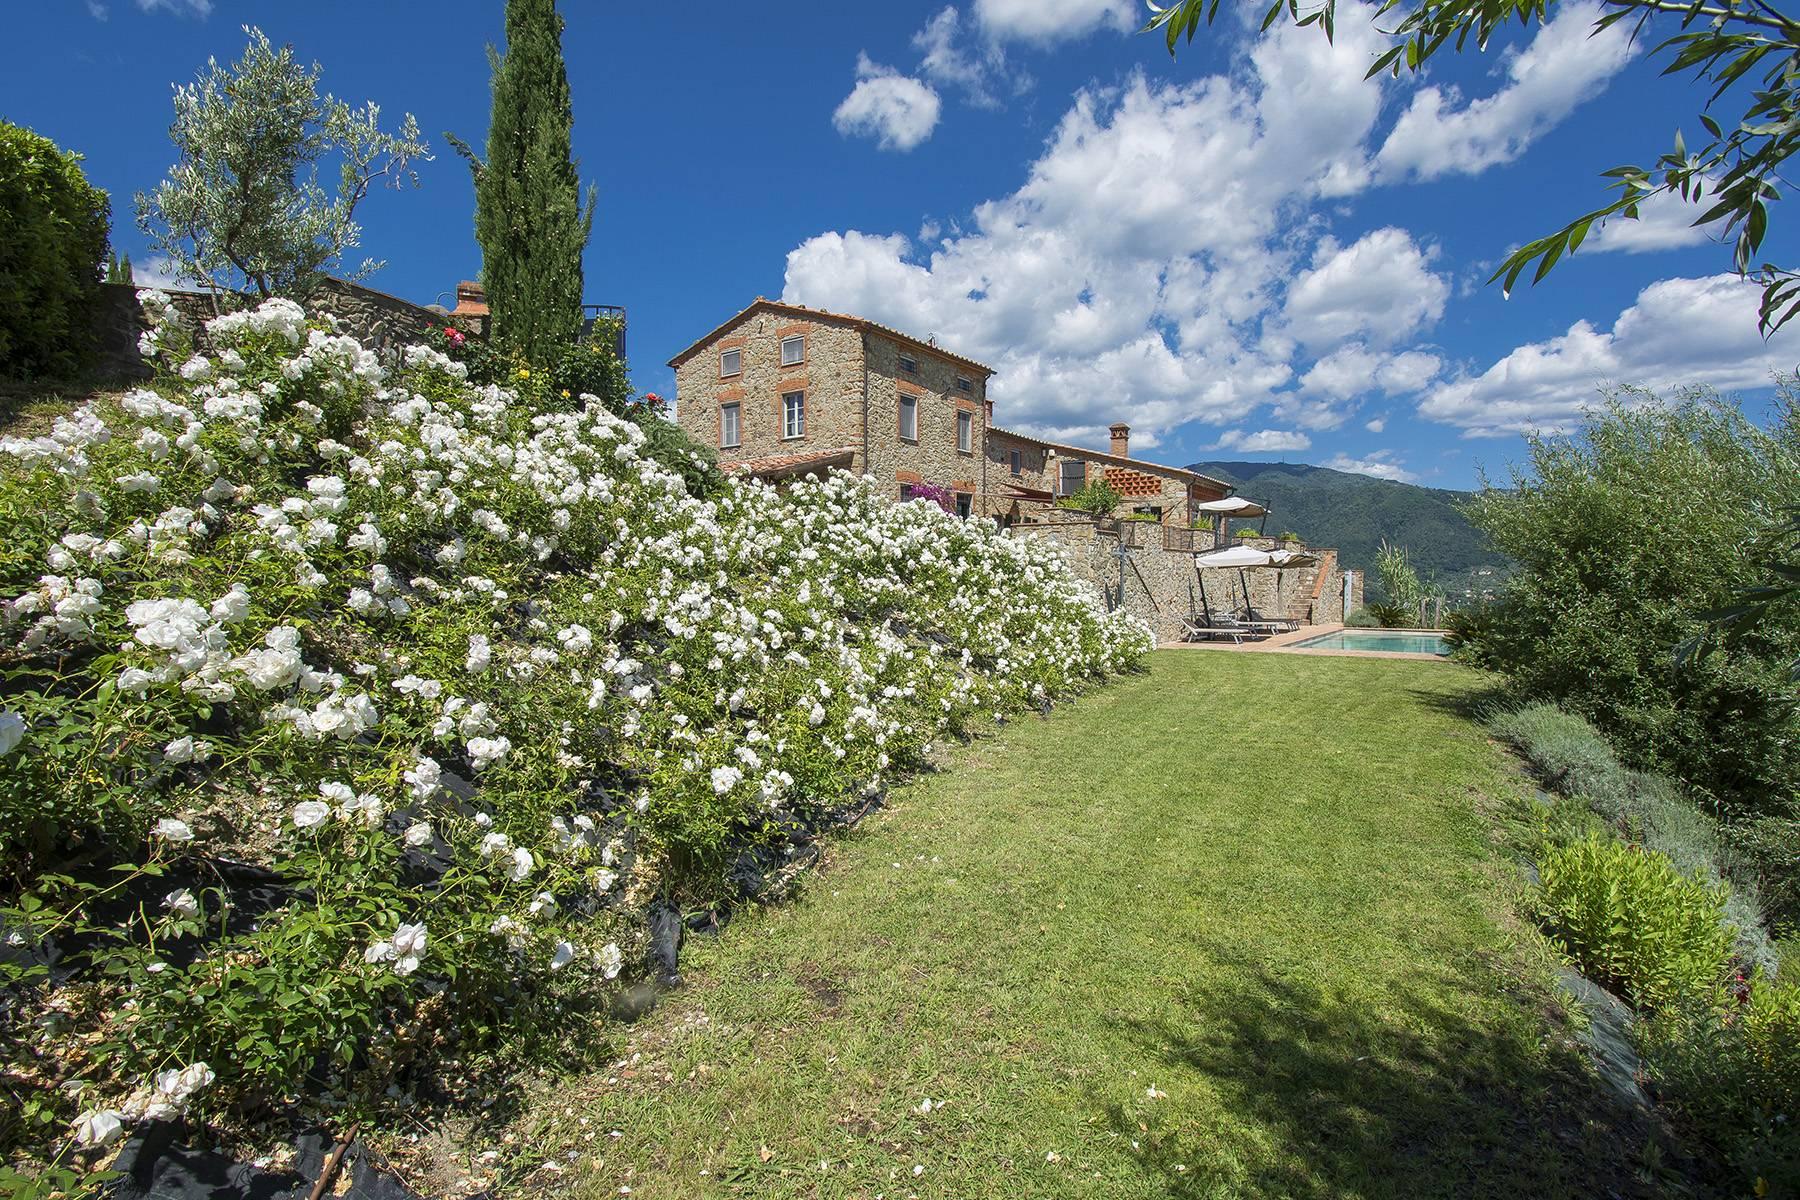 Superbe villa de campagne sur les collines de Lucca avec vignoble - 2